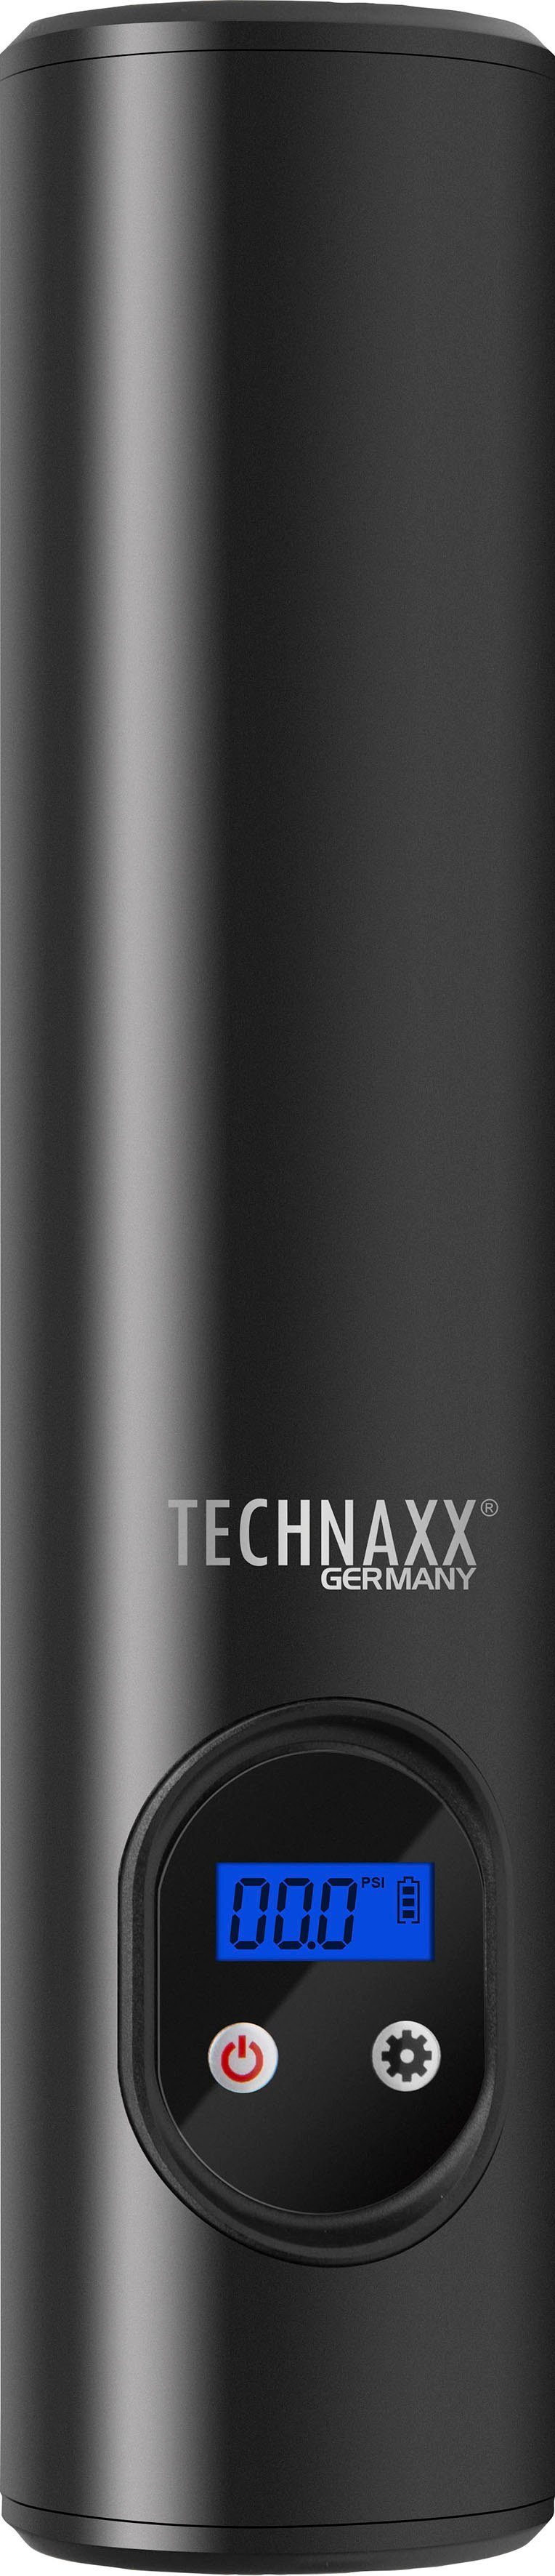 Technaxx Luftkompressor Akku-Handkompressor Akku 8 max. bar, Komplett-Set TX-157,